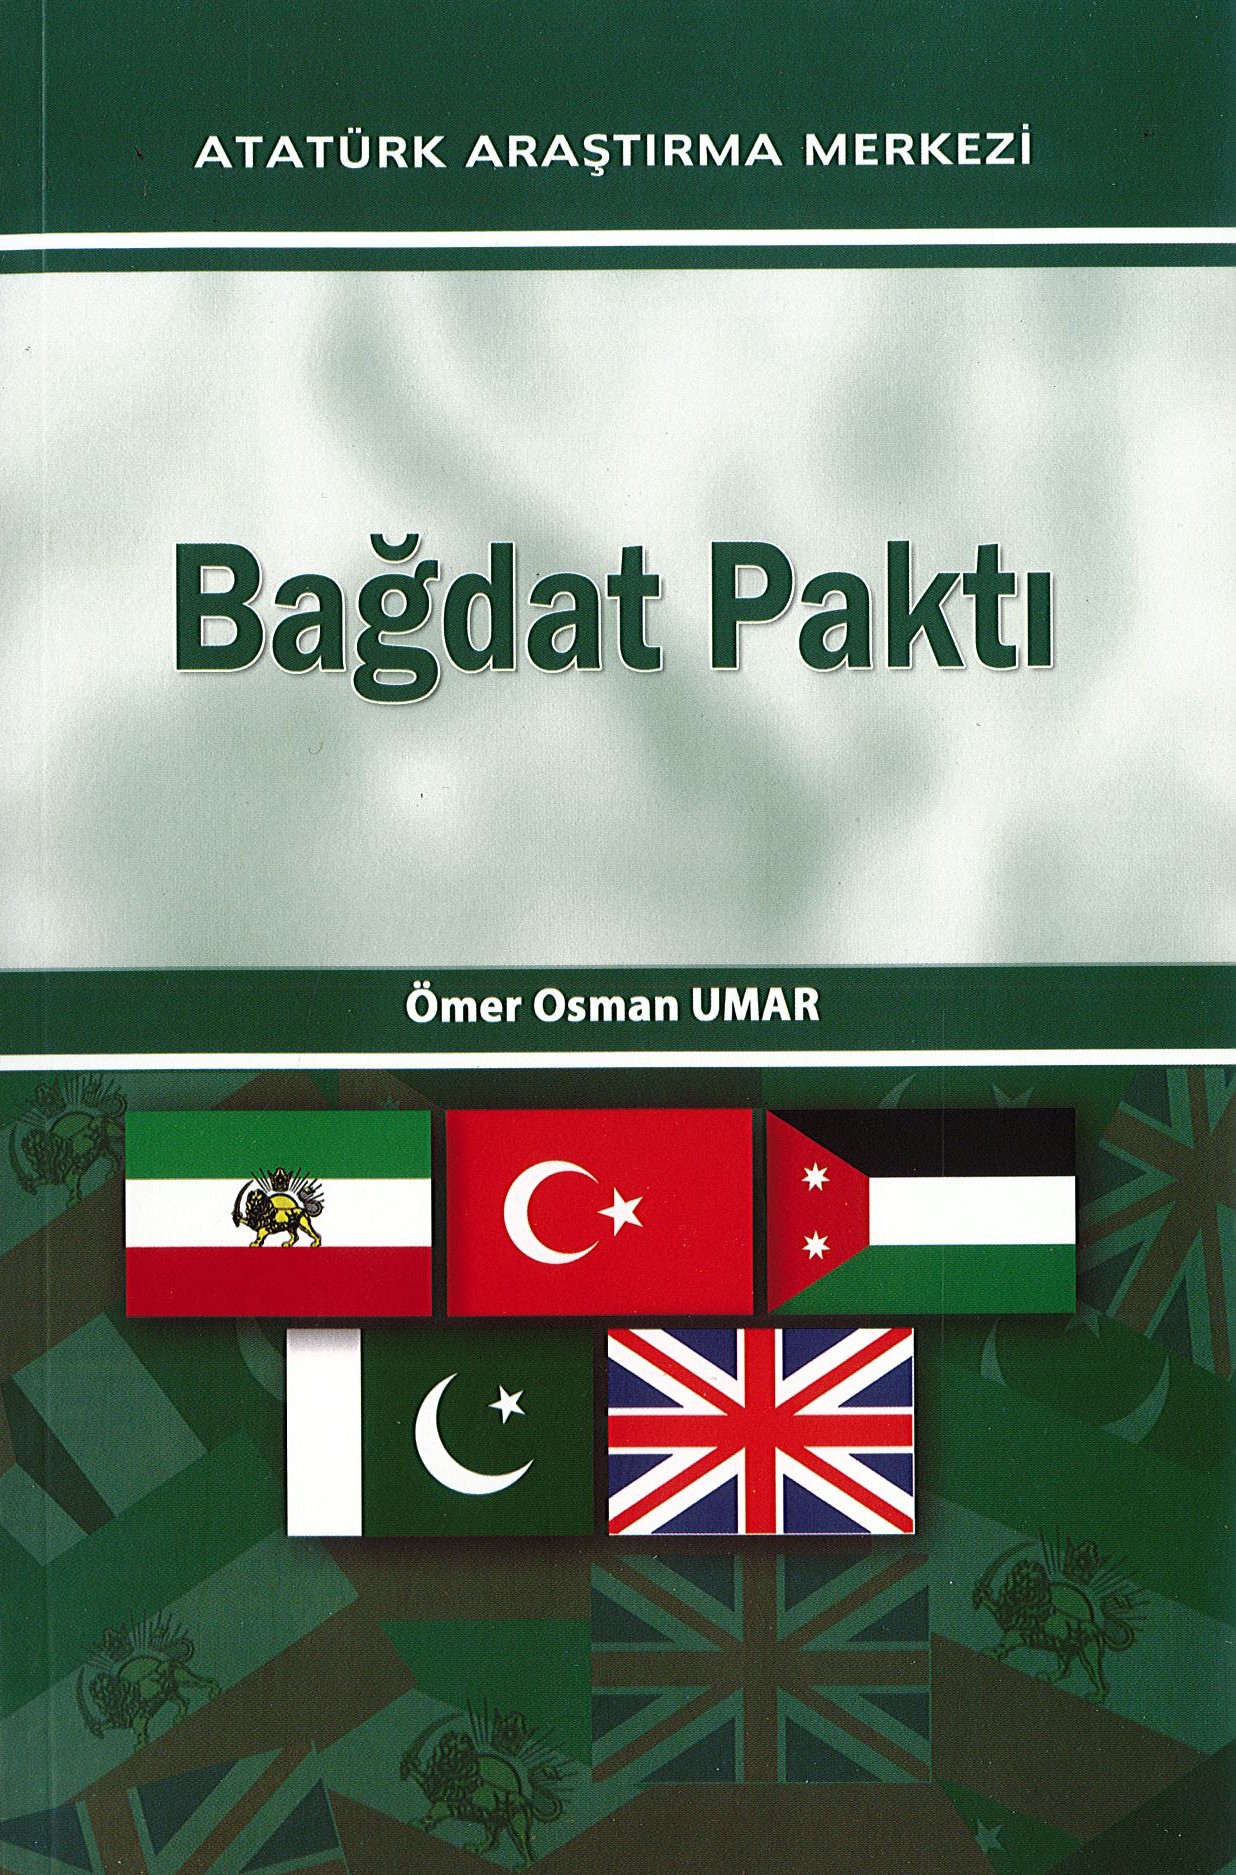 Bağdat Paktı, 2013